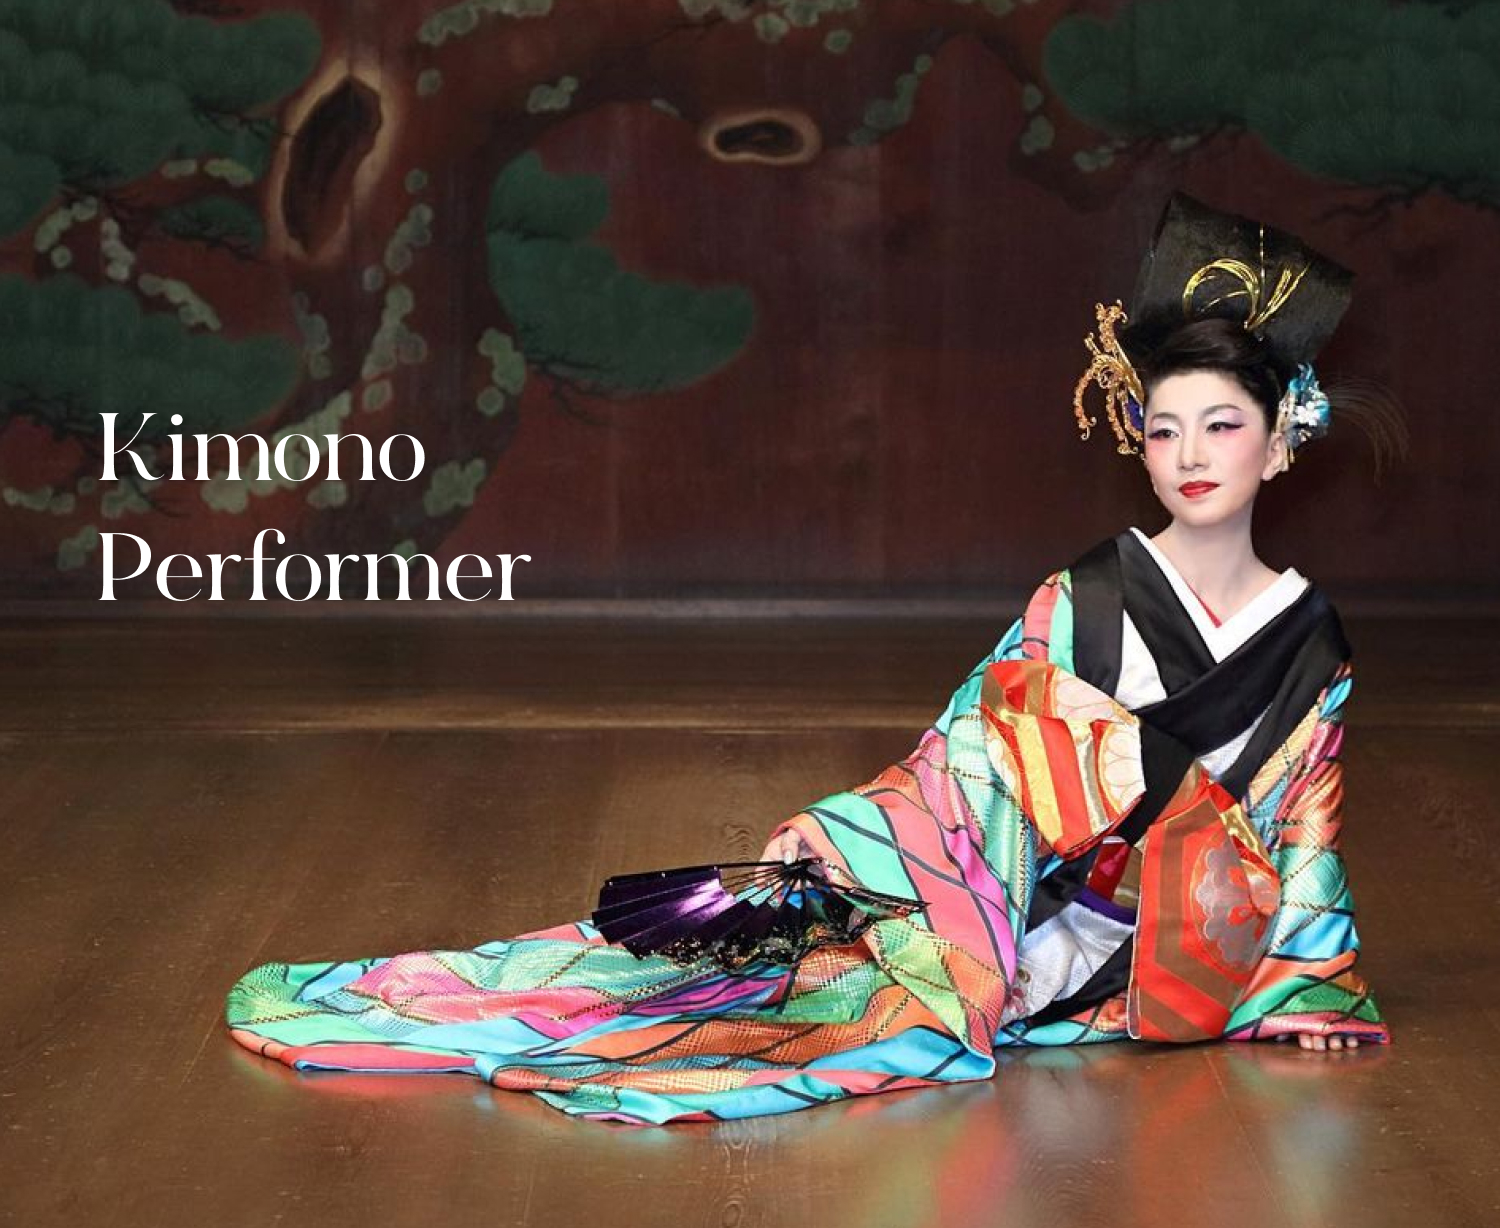 Kimono Performer